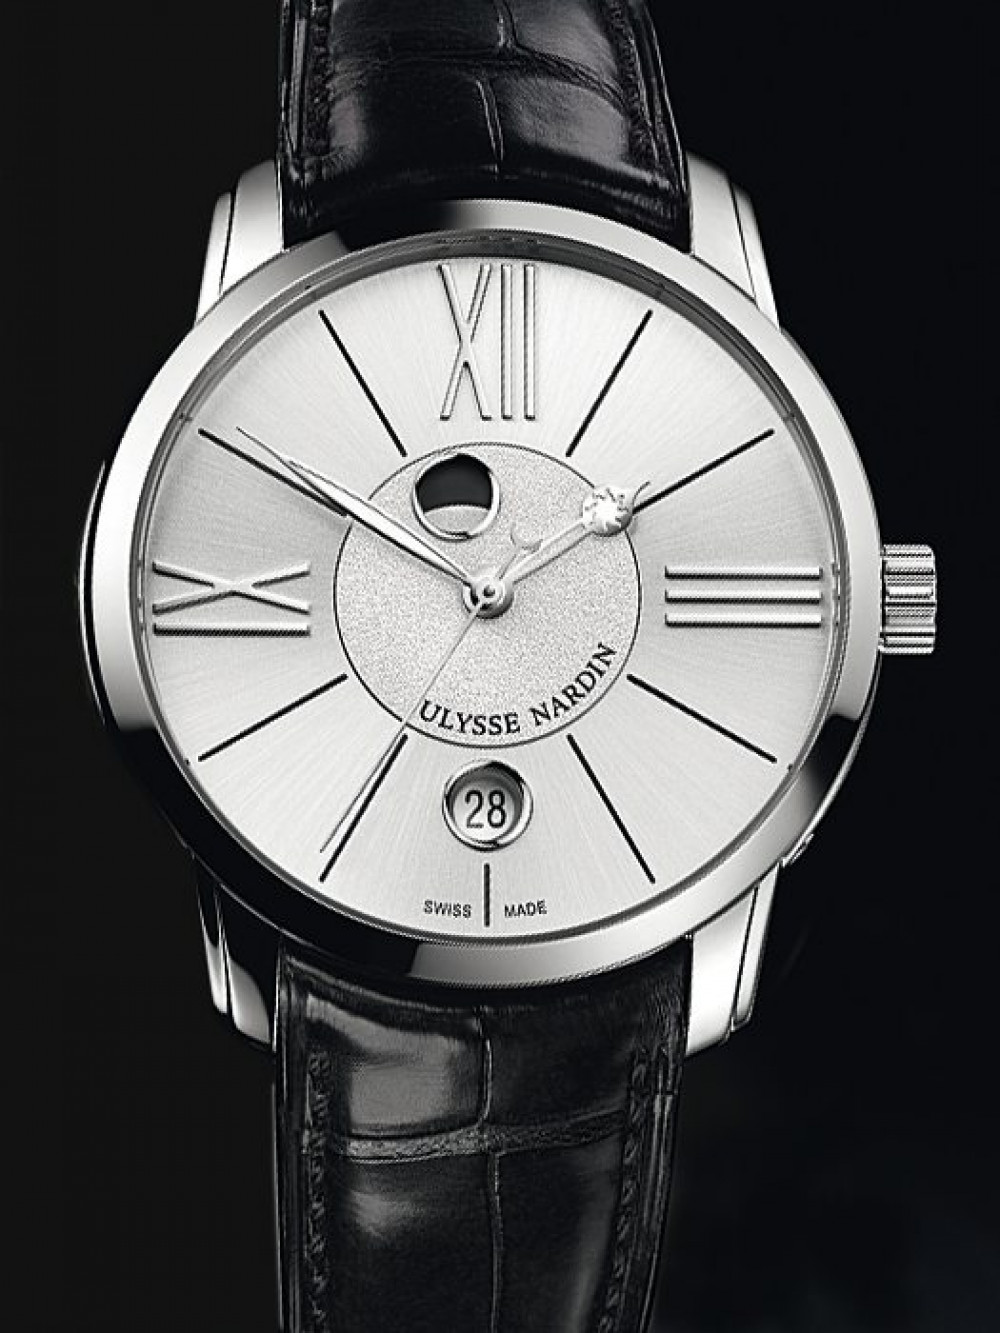 Zegarek firmy Ulysse Nardin, model Classico Luna